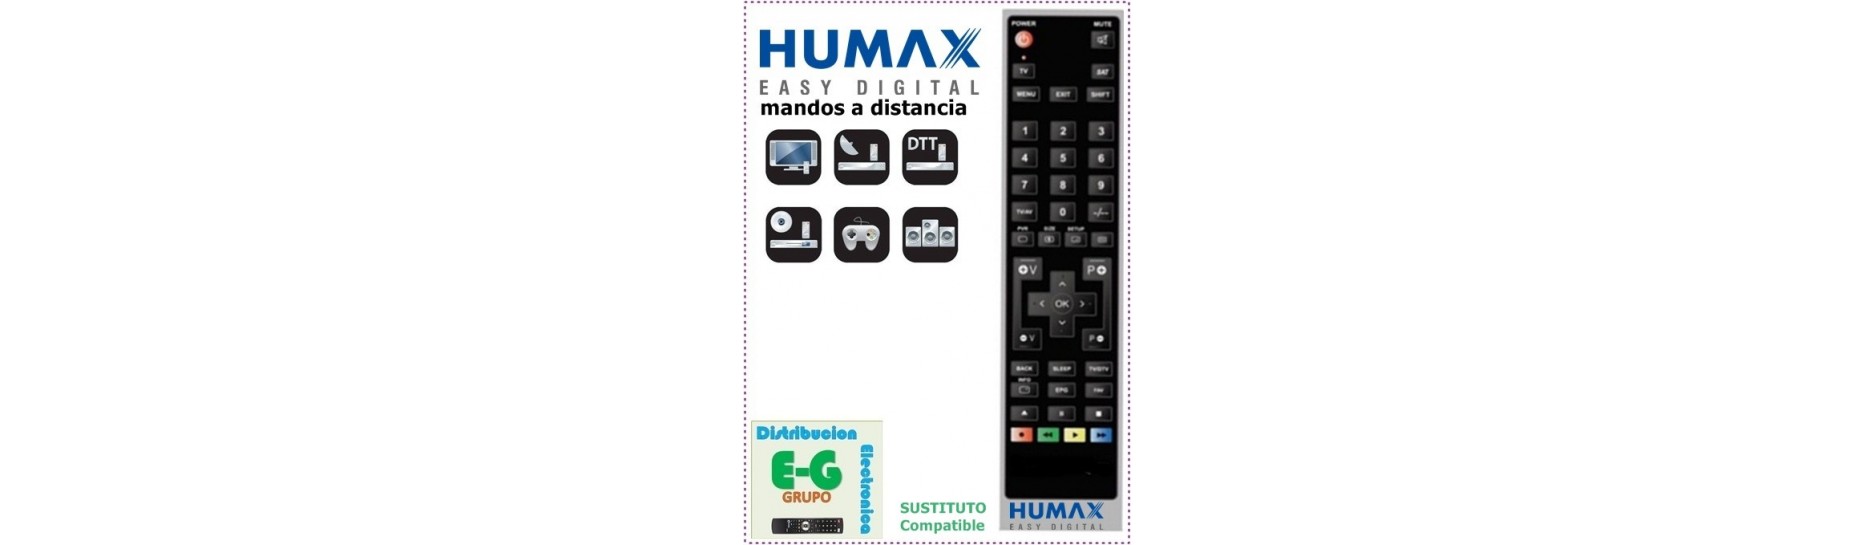 Mando para Televisión HUMAX | Comprar Mando para Televisión HUMAX